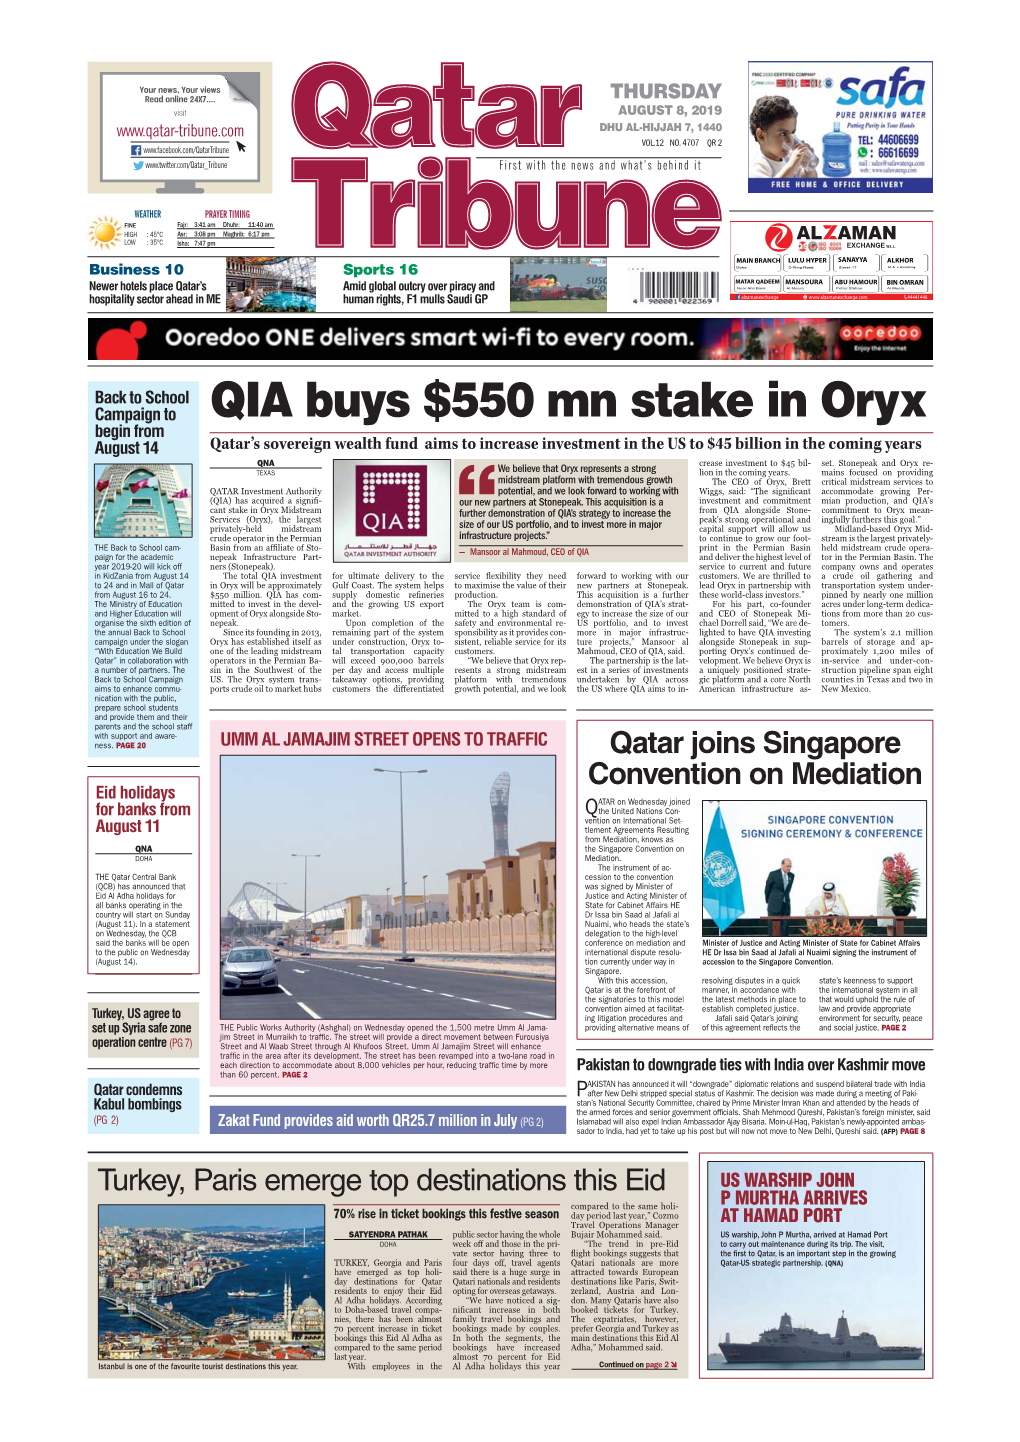 QIA Buys $550 Mn Stake in Oryx